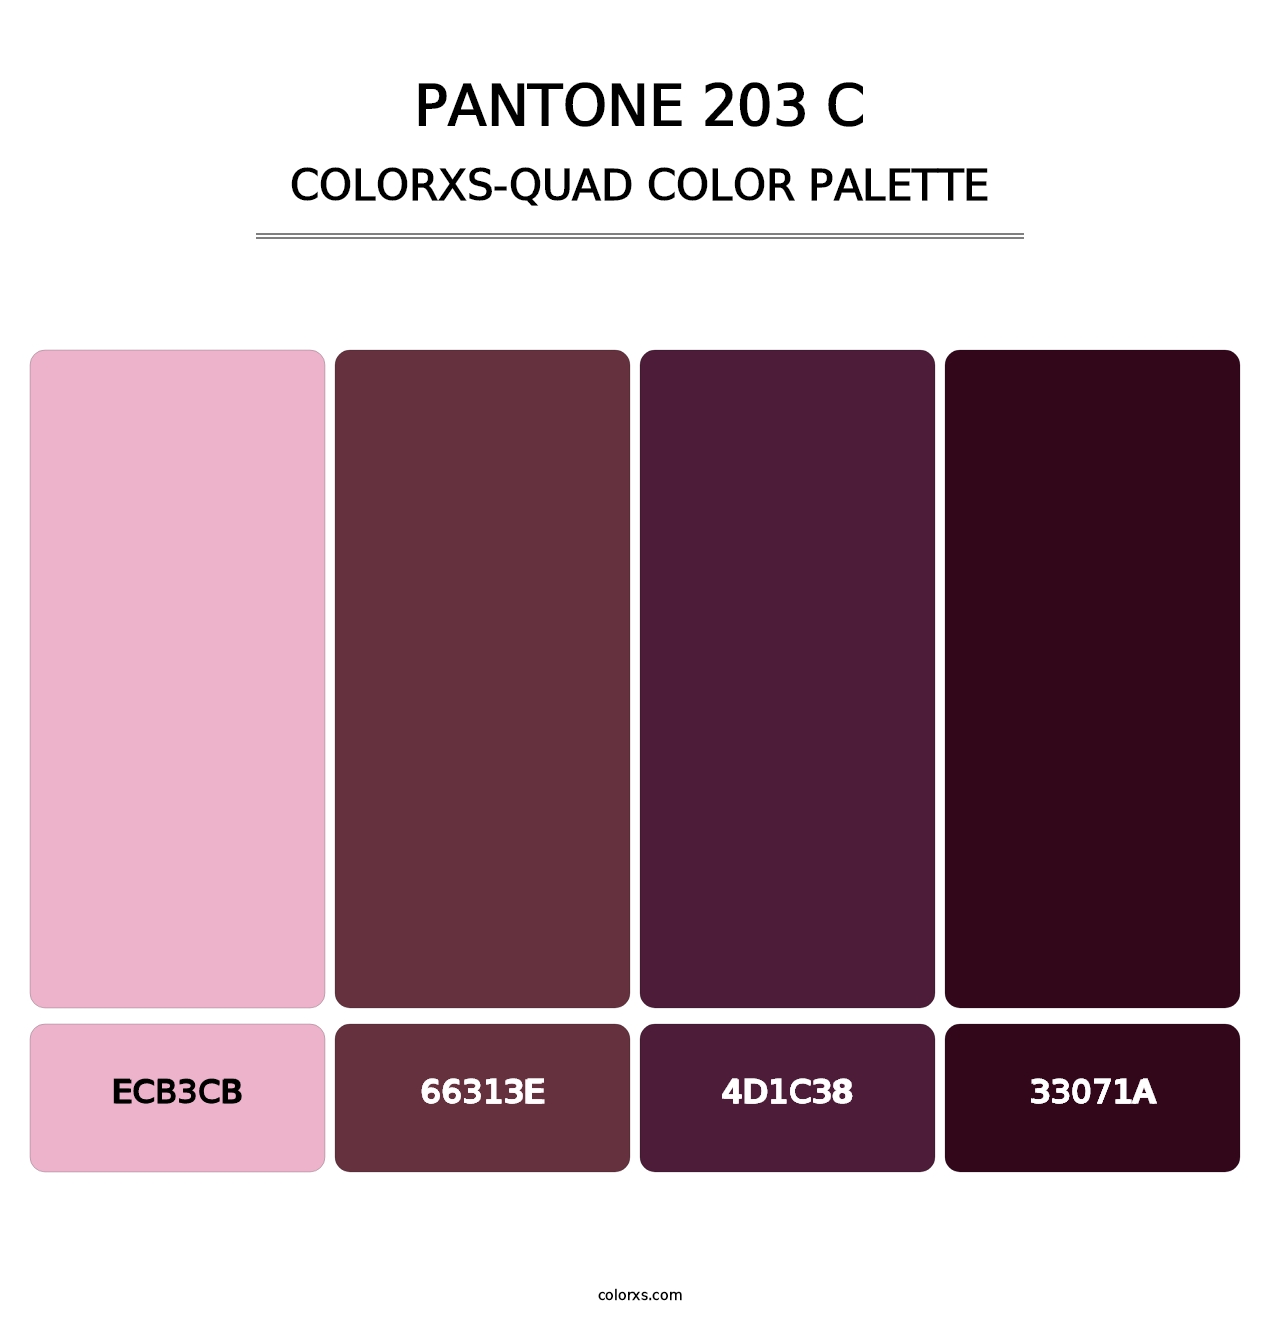 PANTONE 203 C - Colorxs Quad Palette